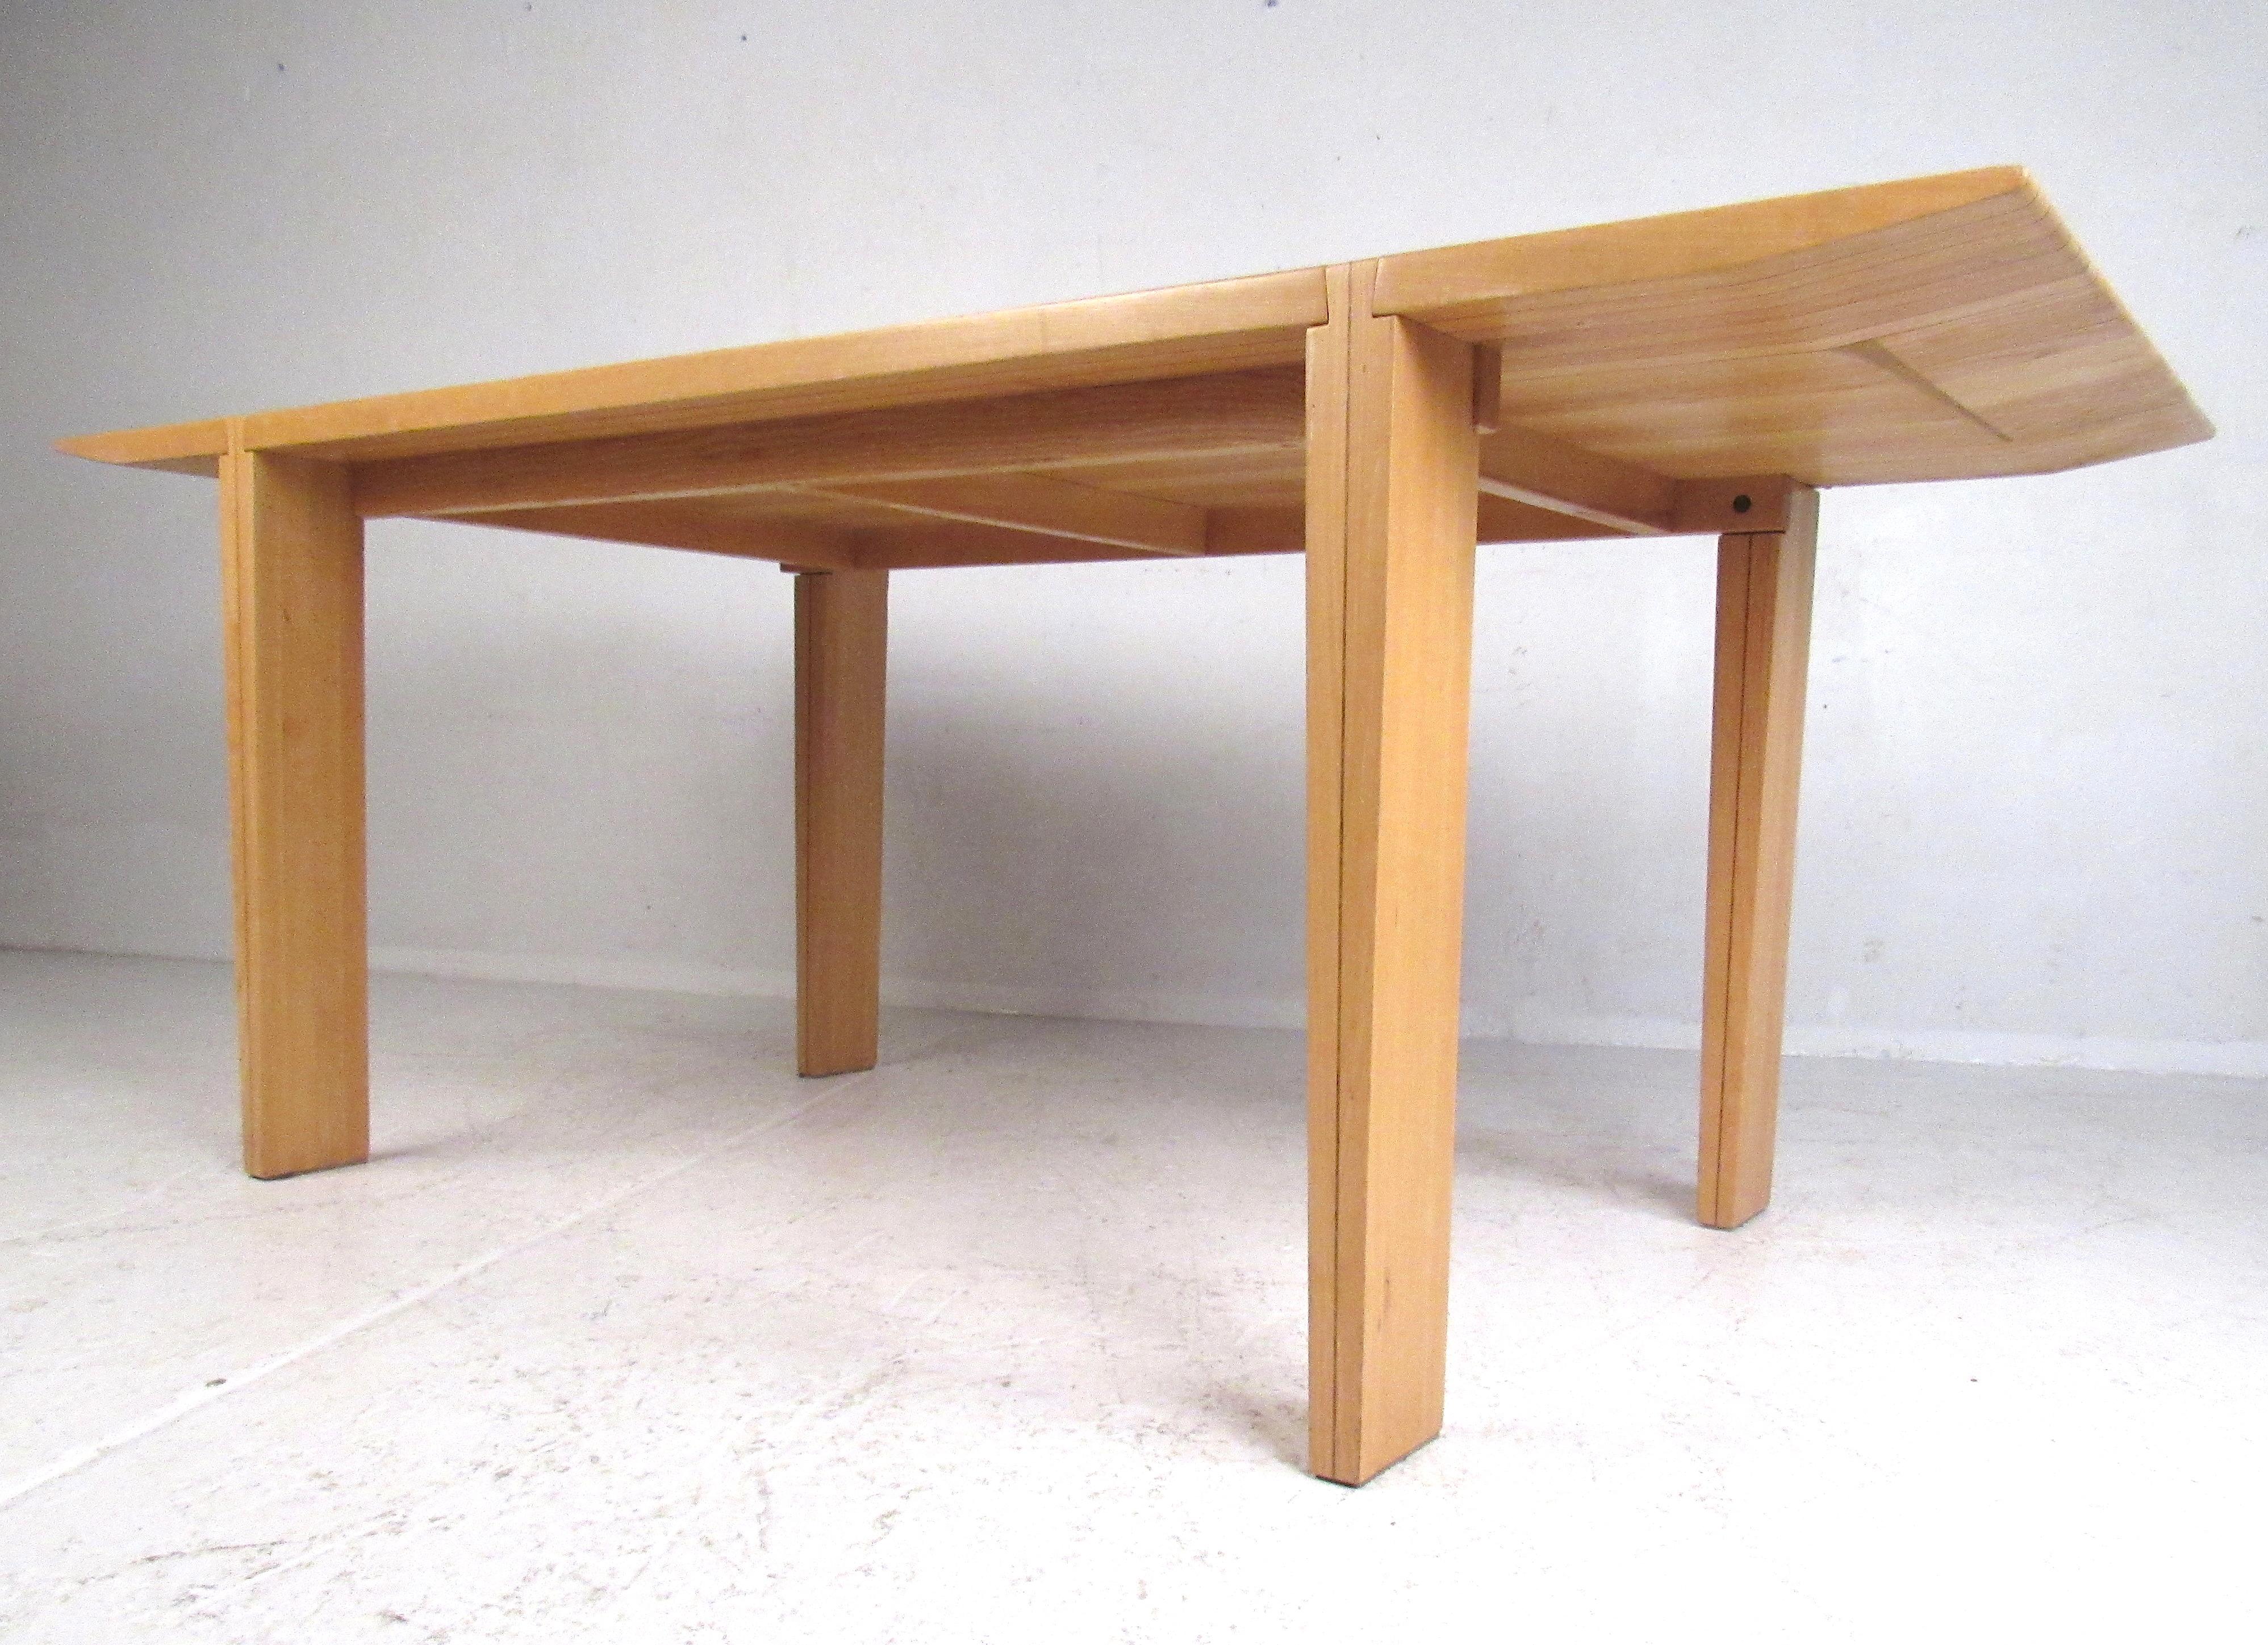 Impressionnante table à manger d'Antonio Sibau. Design intéressant avec une menuiserie inhabituelle en queue d'aronde reliant les pieds au plateau de la table. Un complément idéal pour tout intérieur moderne. Veuillez confirmer la localisation de